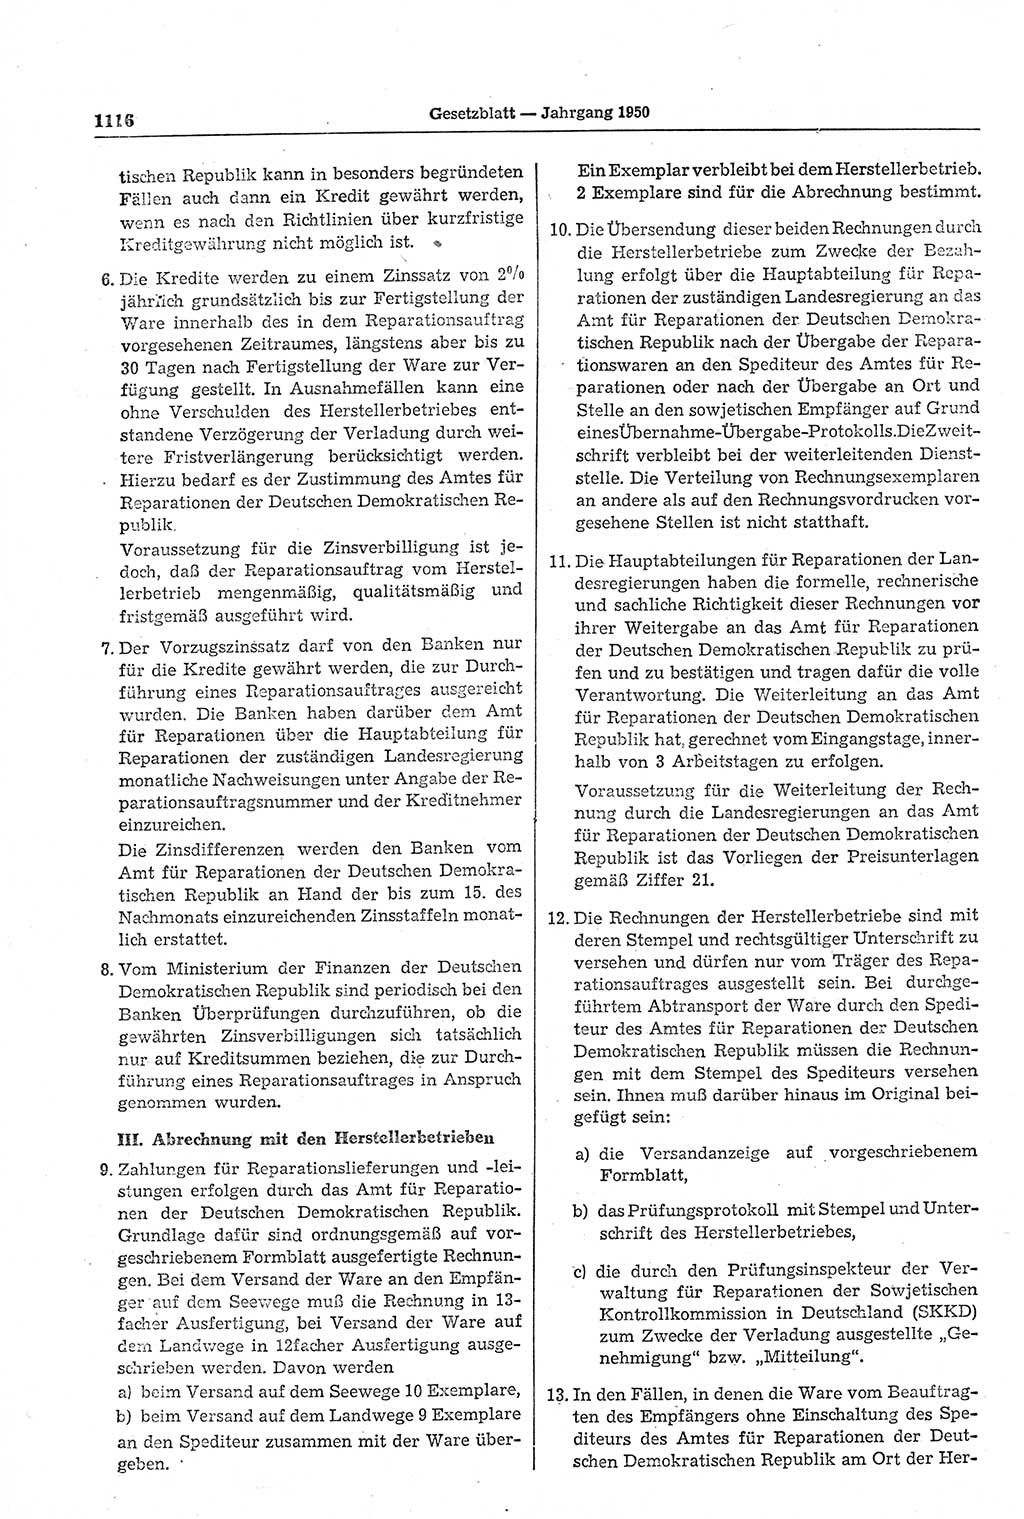 Gesetzblatt (GBl.) der Deutschen Demokratischen Republik (DDR) 1950, Seite 1116 (GBl. DDR 1950, S. 1116)